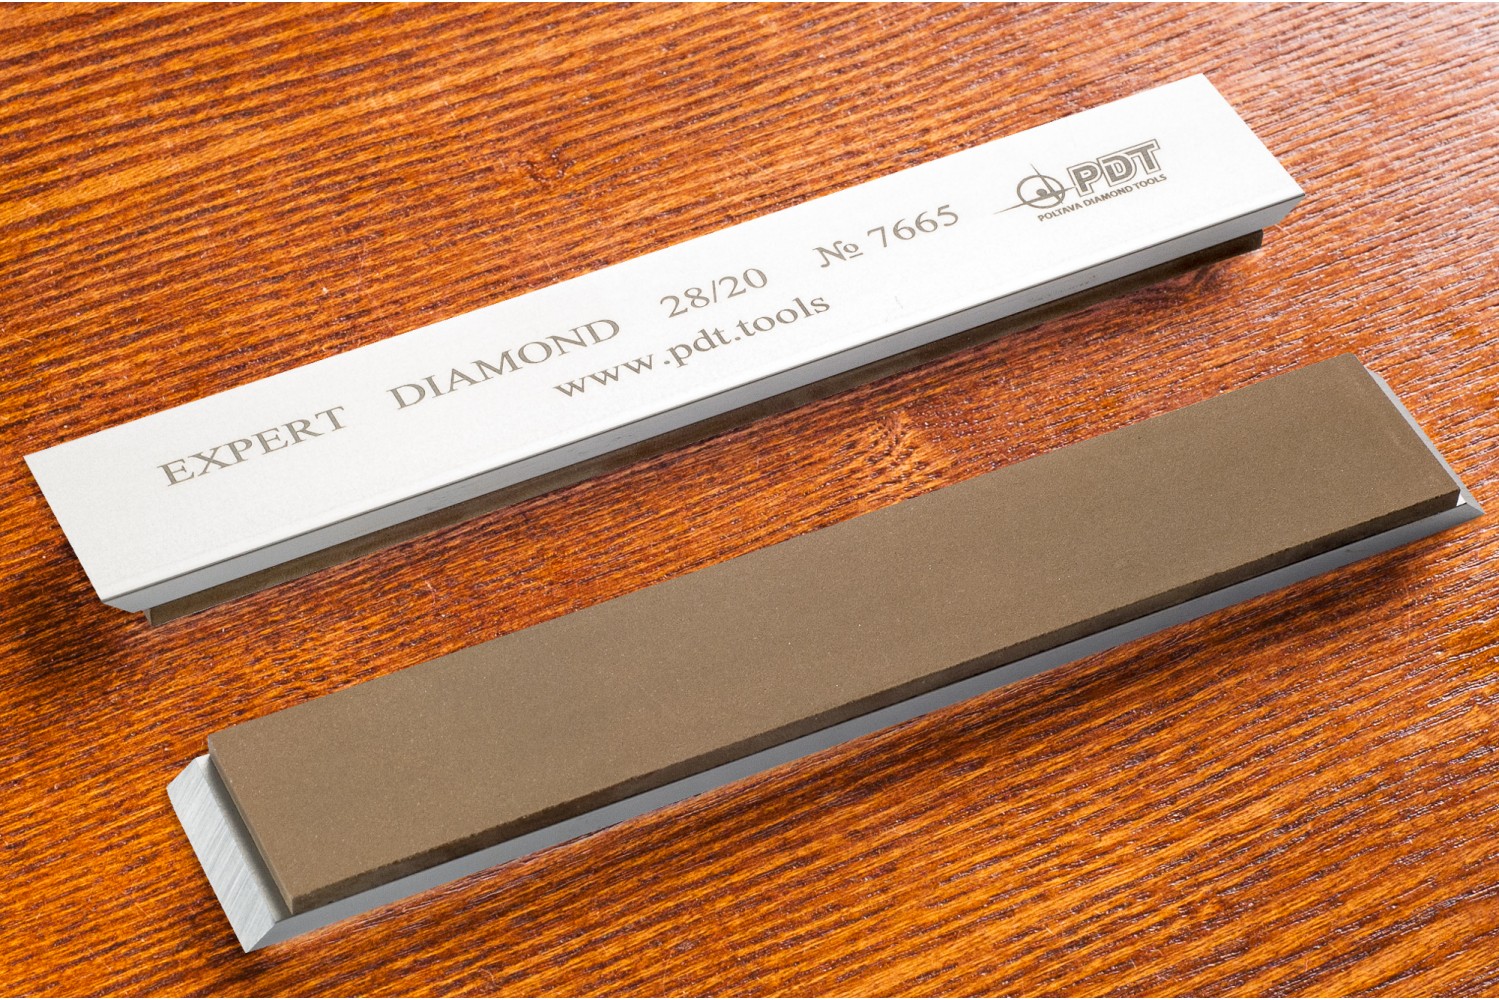 Алмазный брусок для заточки PDT EXPERT 150-25-3мм 28/20 мкм на алюминиевом бланке устройство для заточки ножей sturm